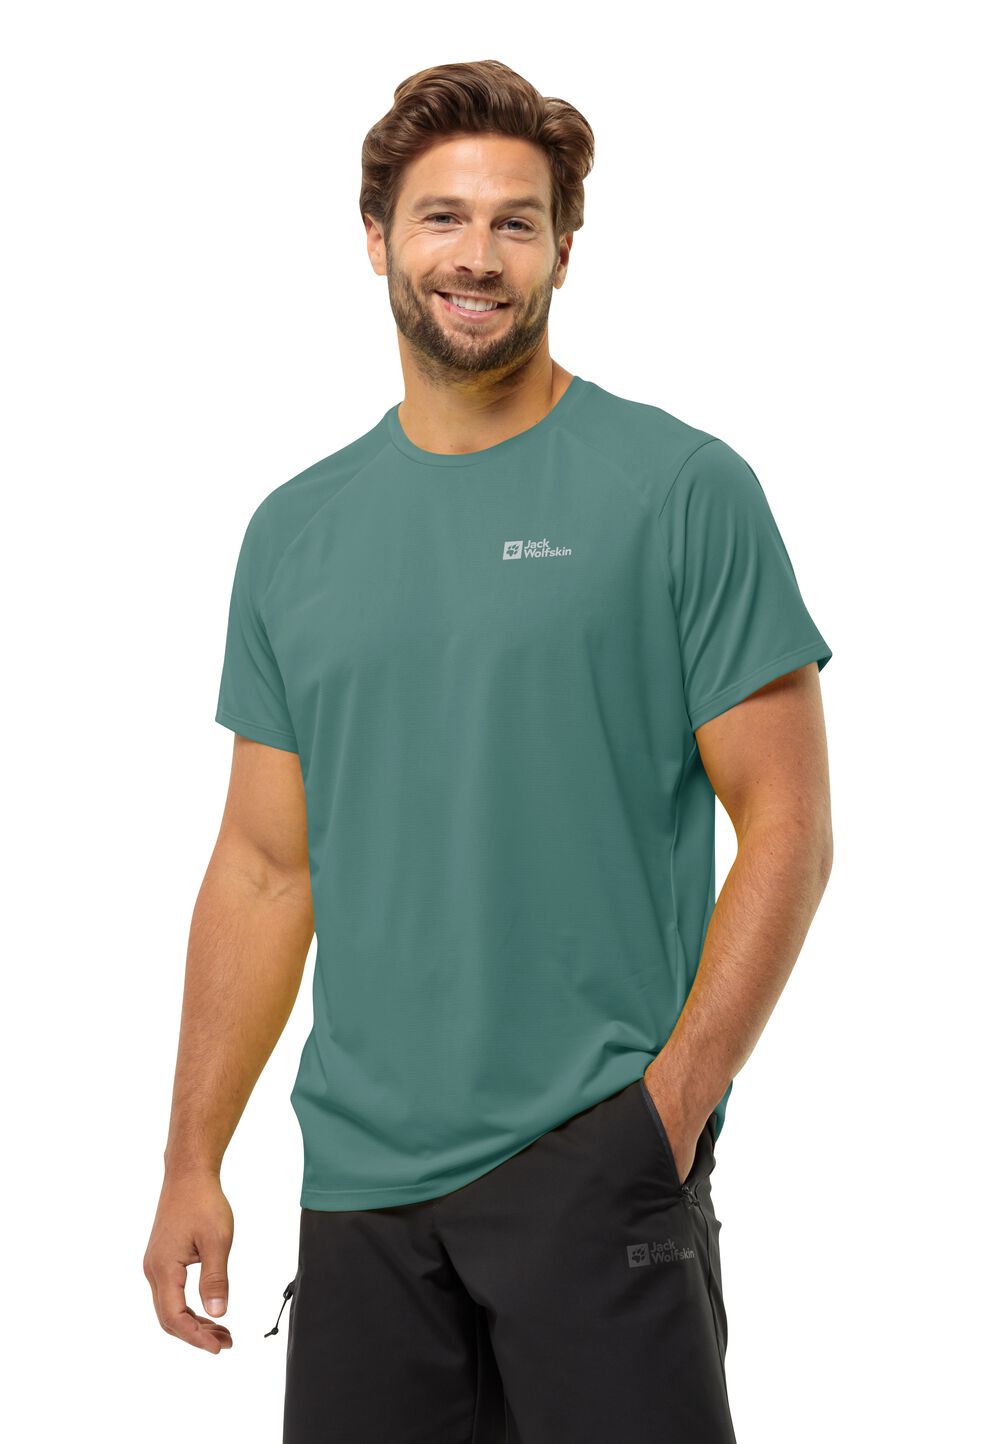 Jack Wolfskin Prelight Trail T-Shirt Men Functioneel shirt Heren XXL jade green jade green